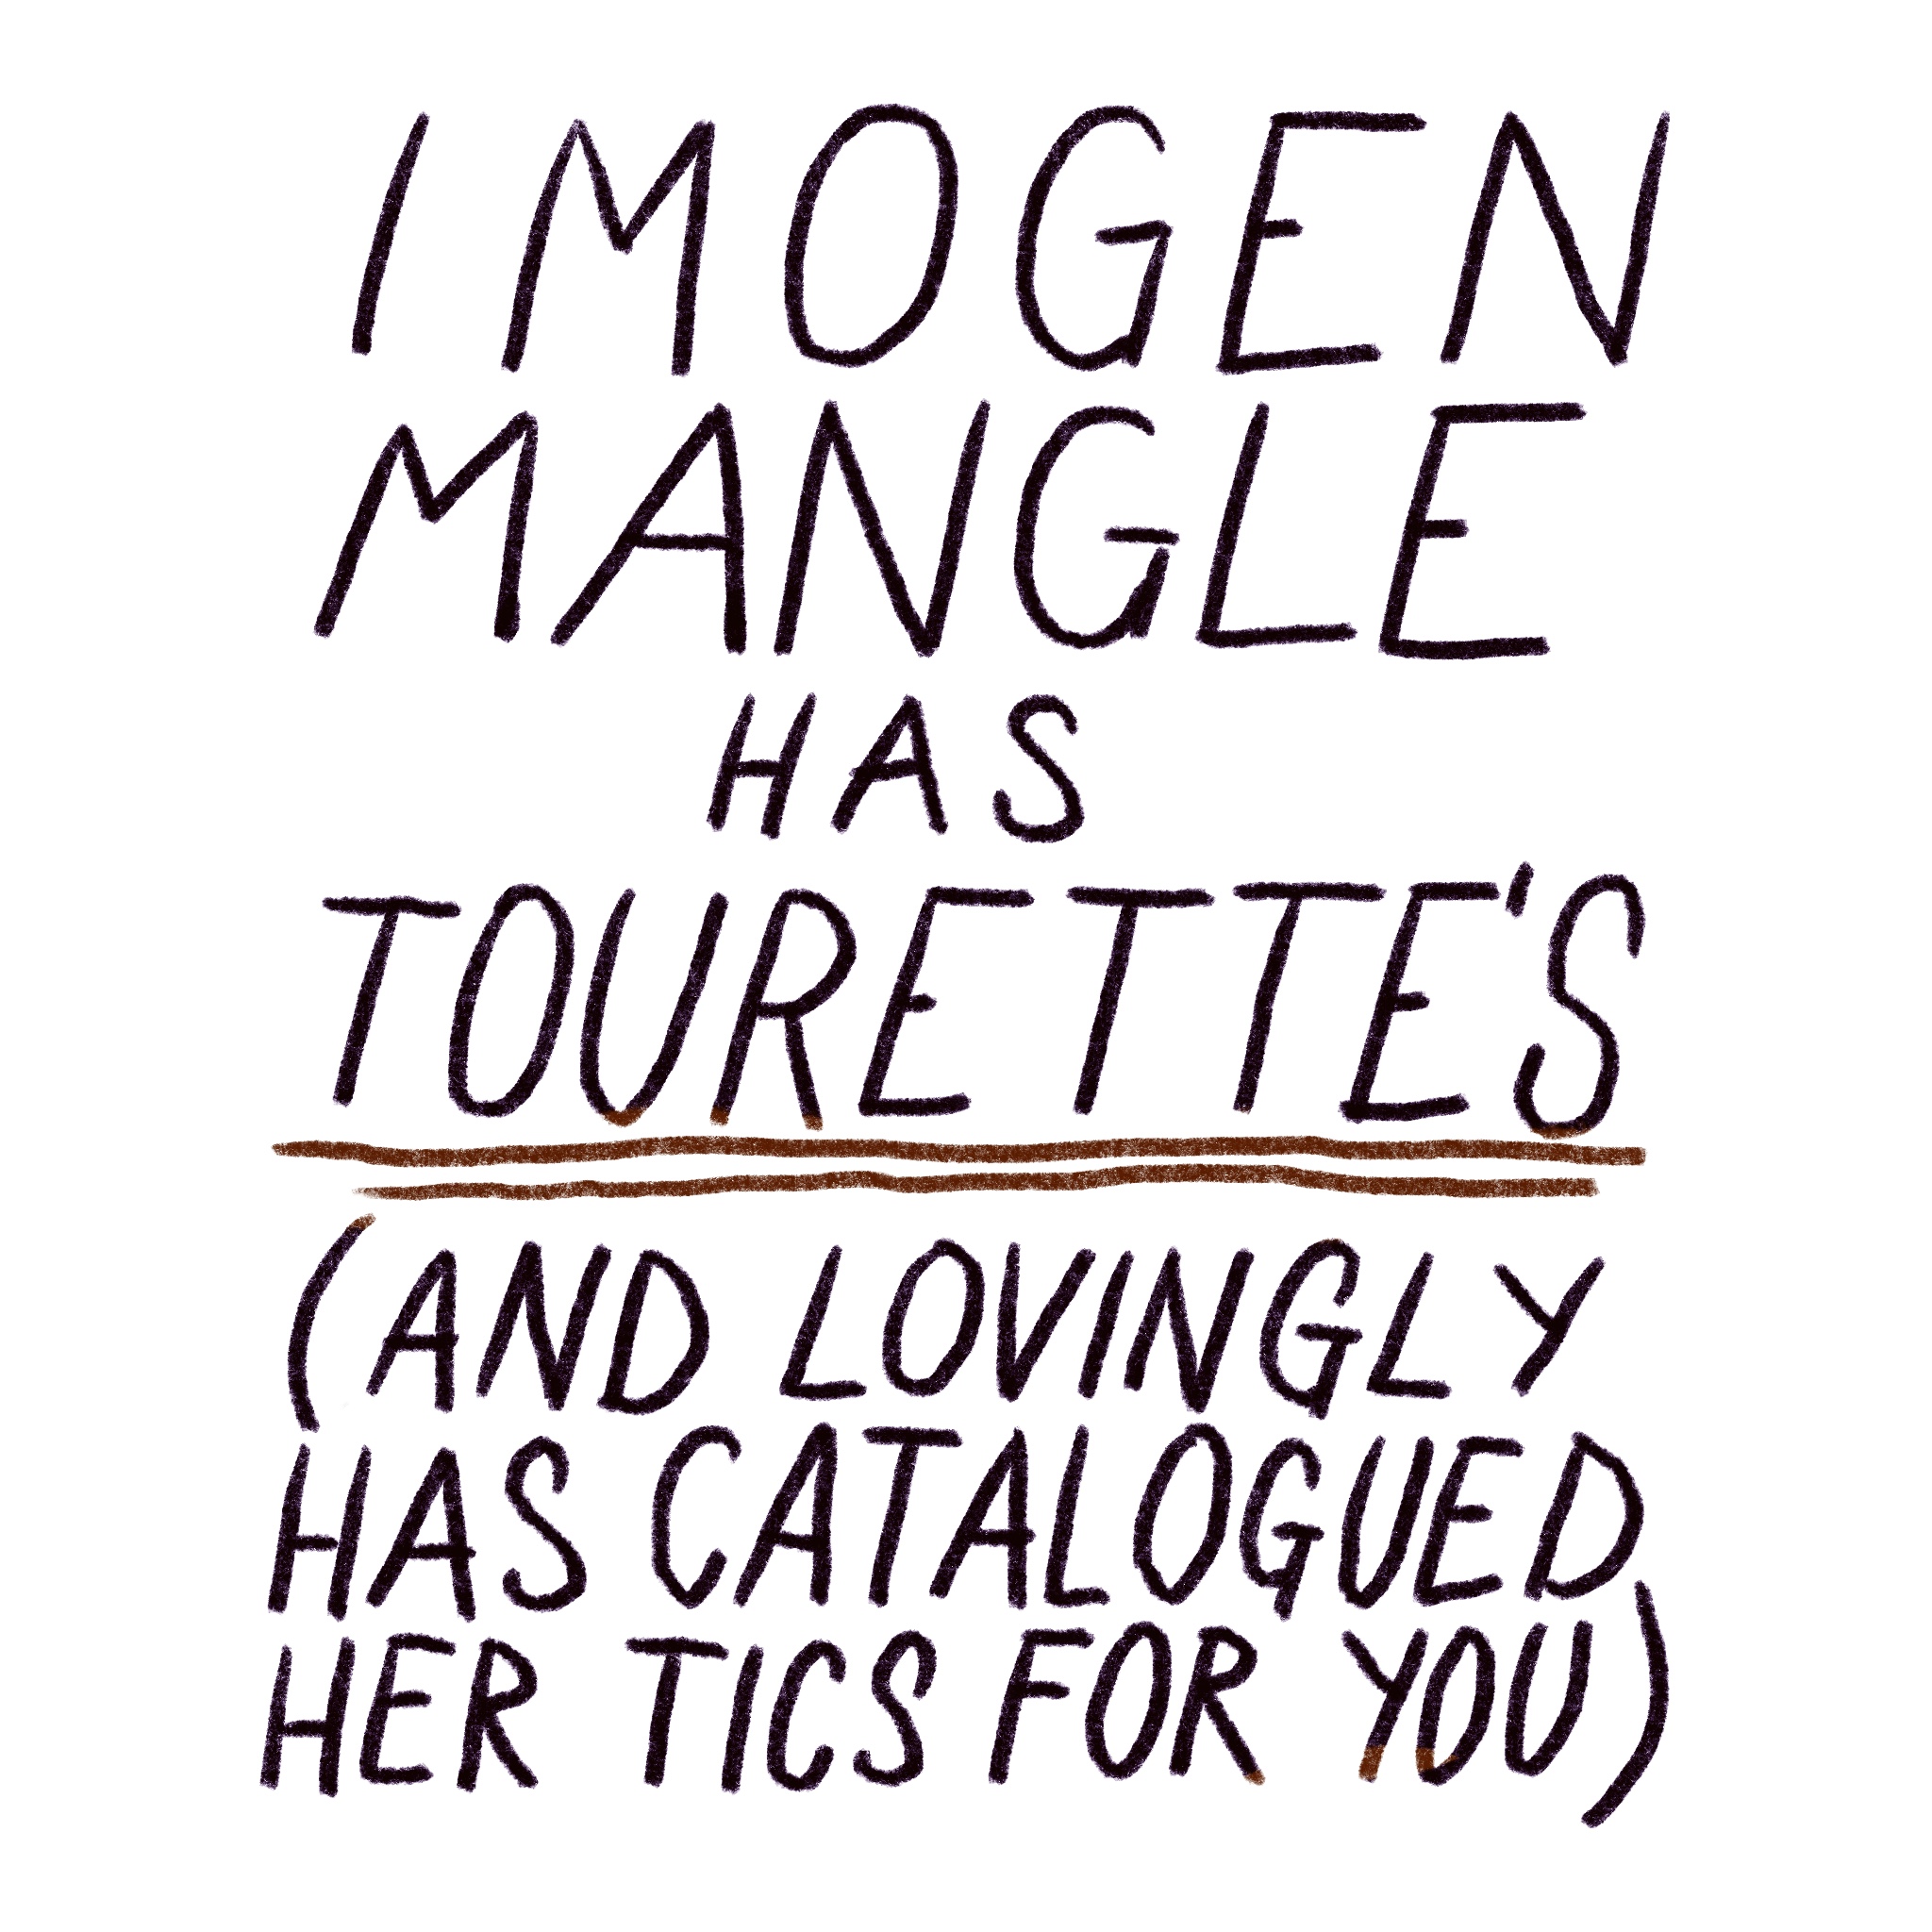 Imogen Mangle Has Tourette's